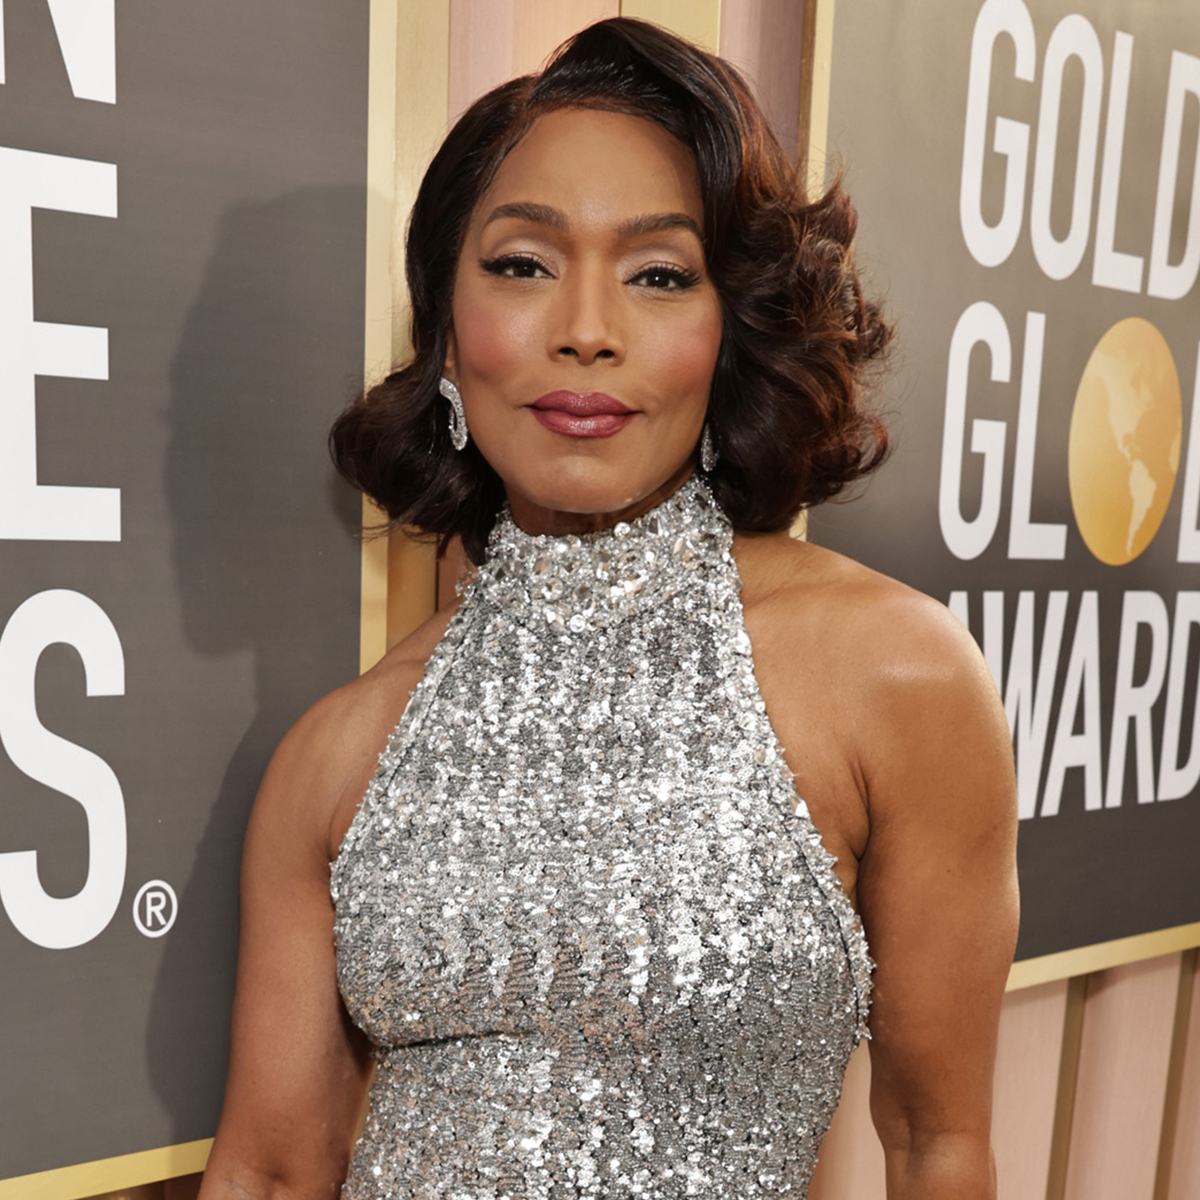 Golden Globes 2023: Complete winners list - ABC News